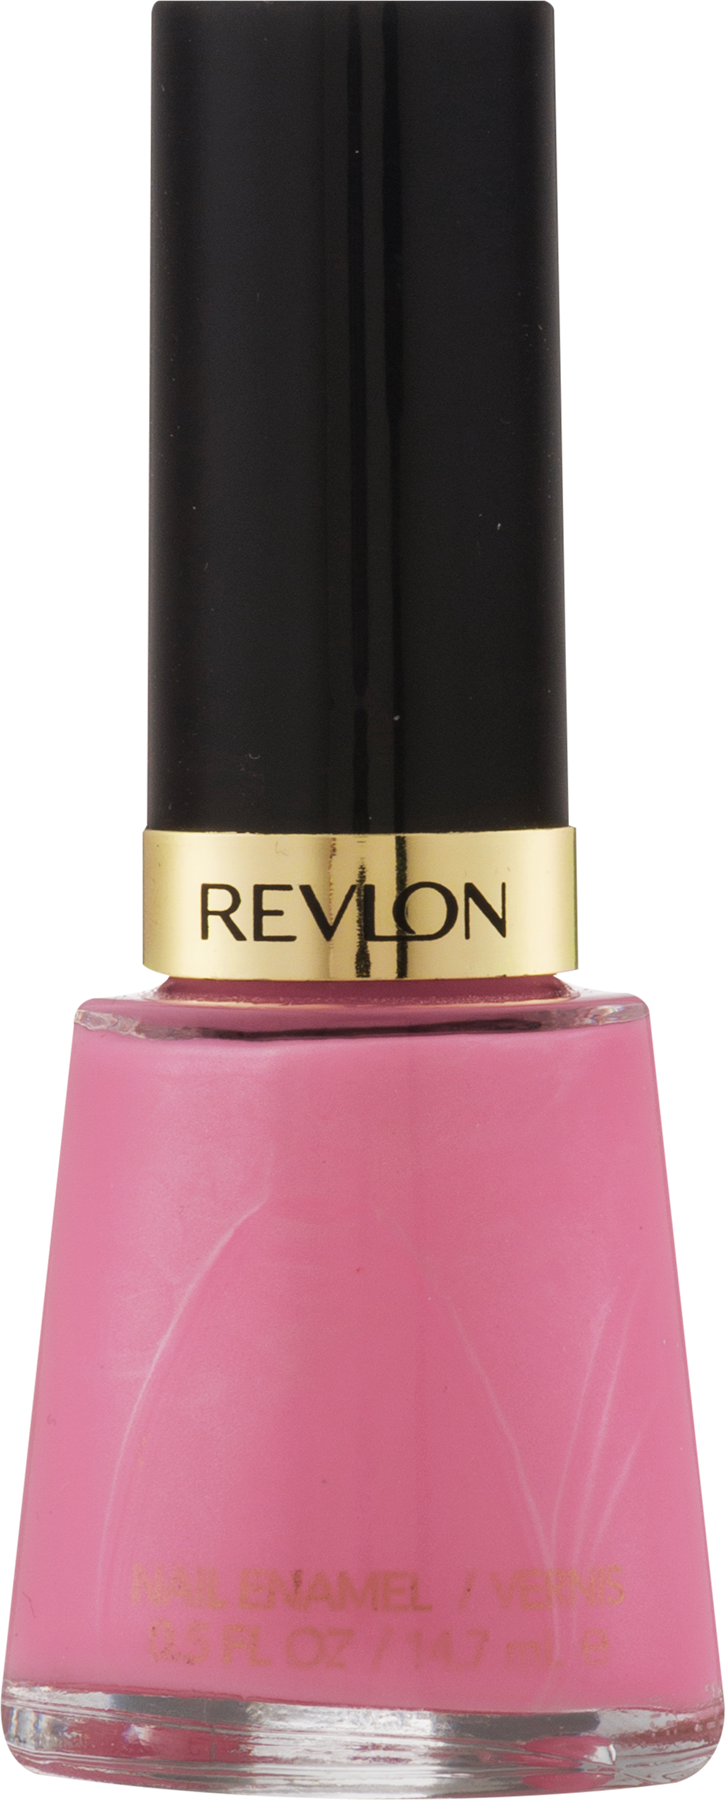 Revlon Nail Enamel - Posh Pink - image 1 of 4